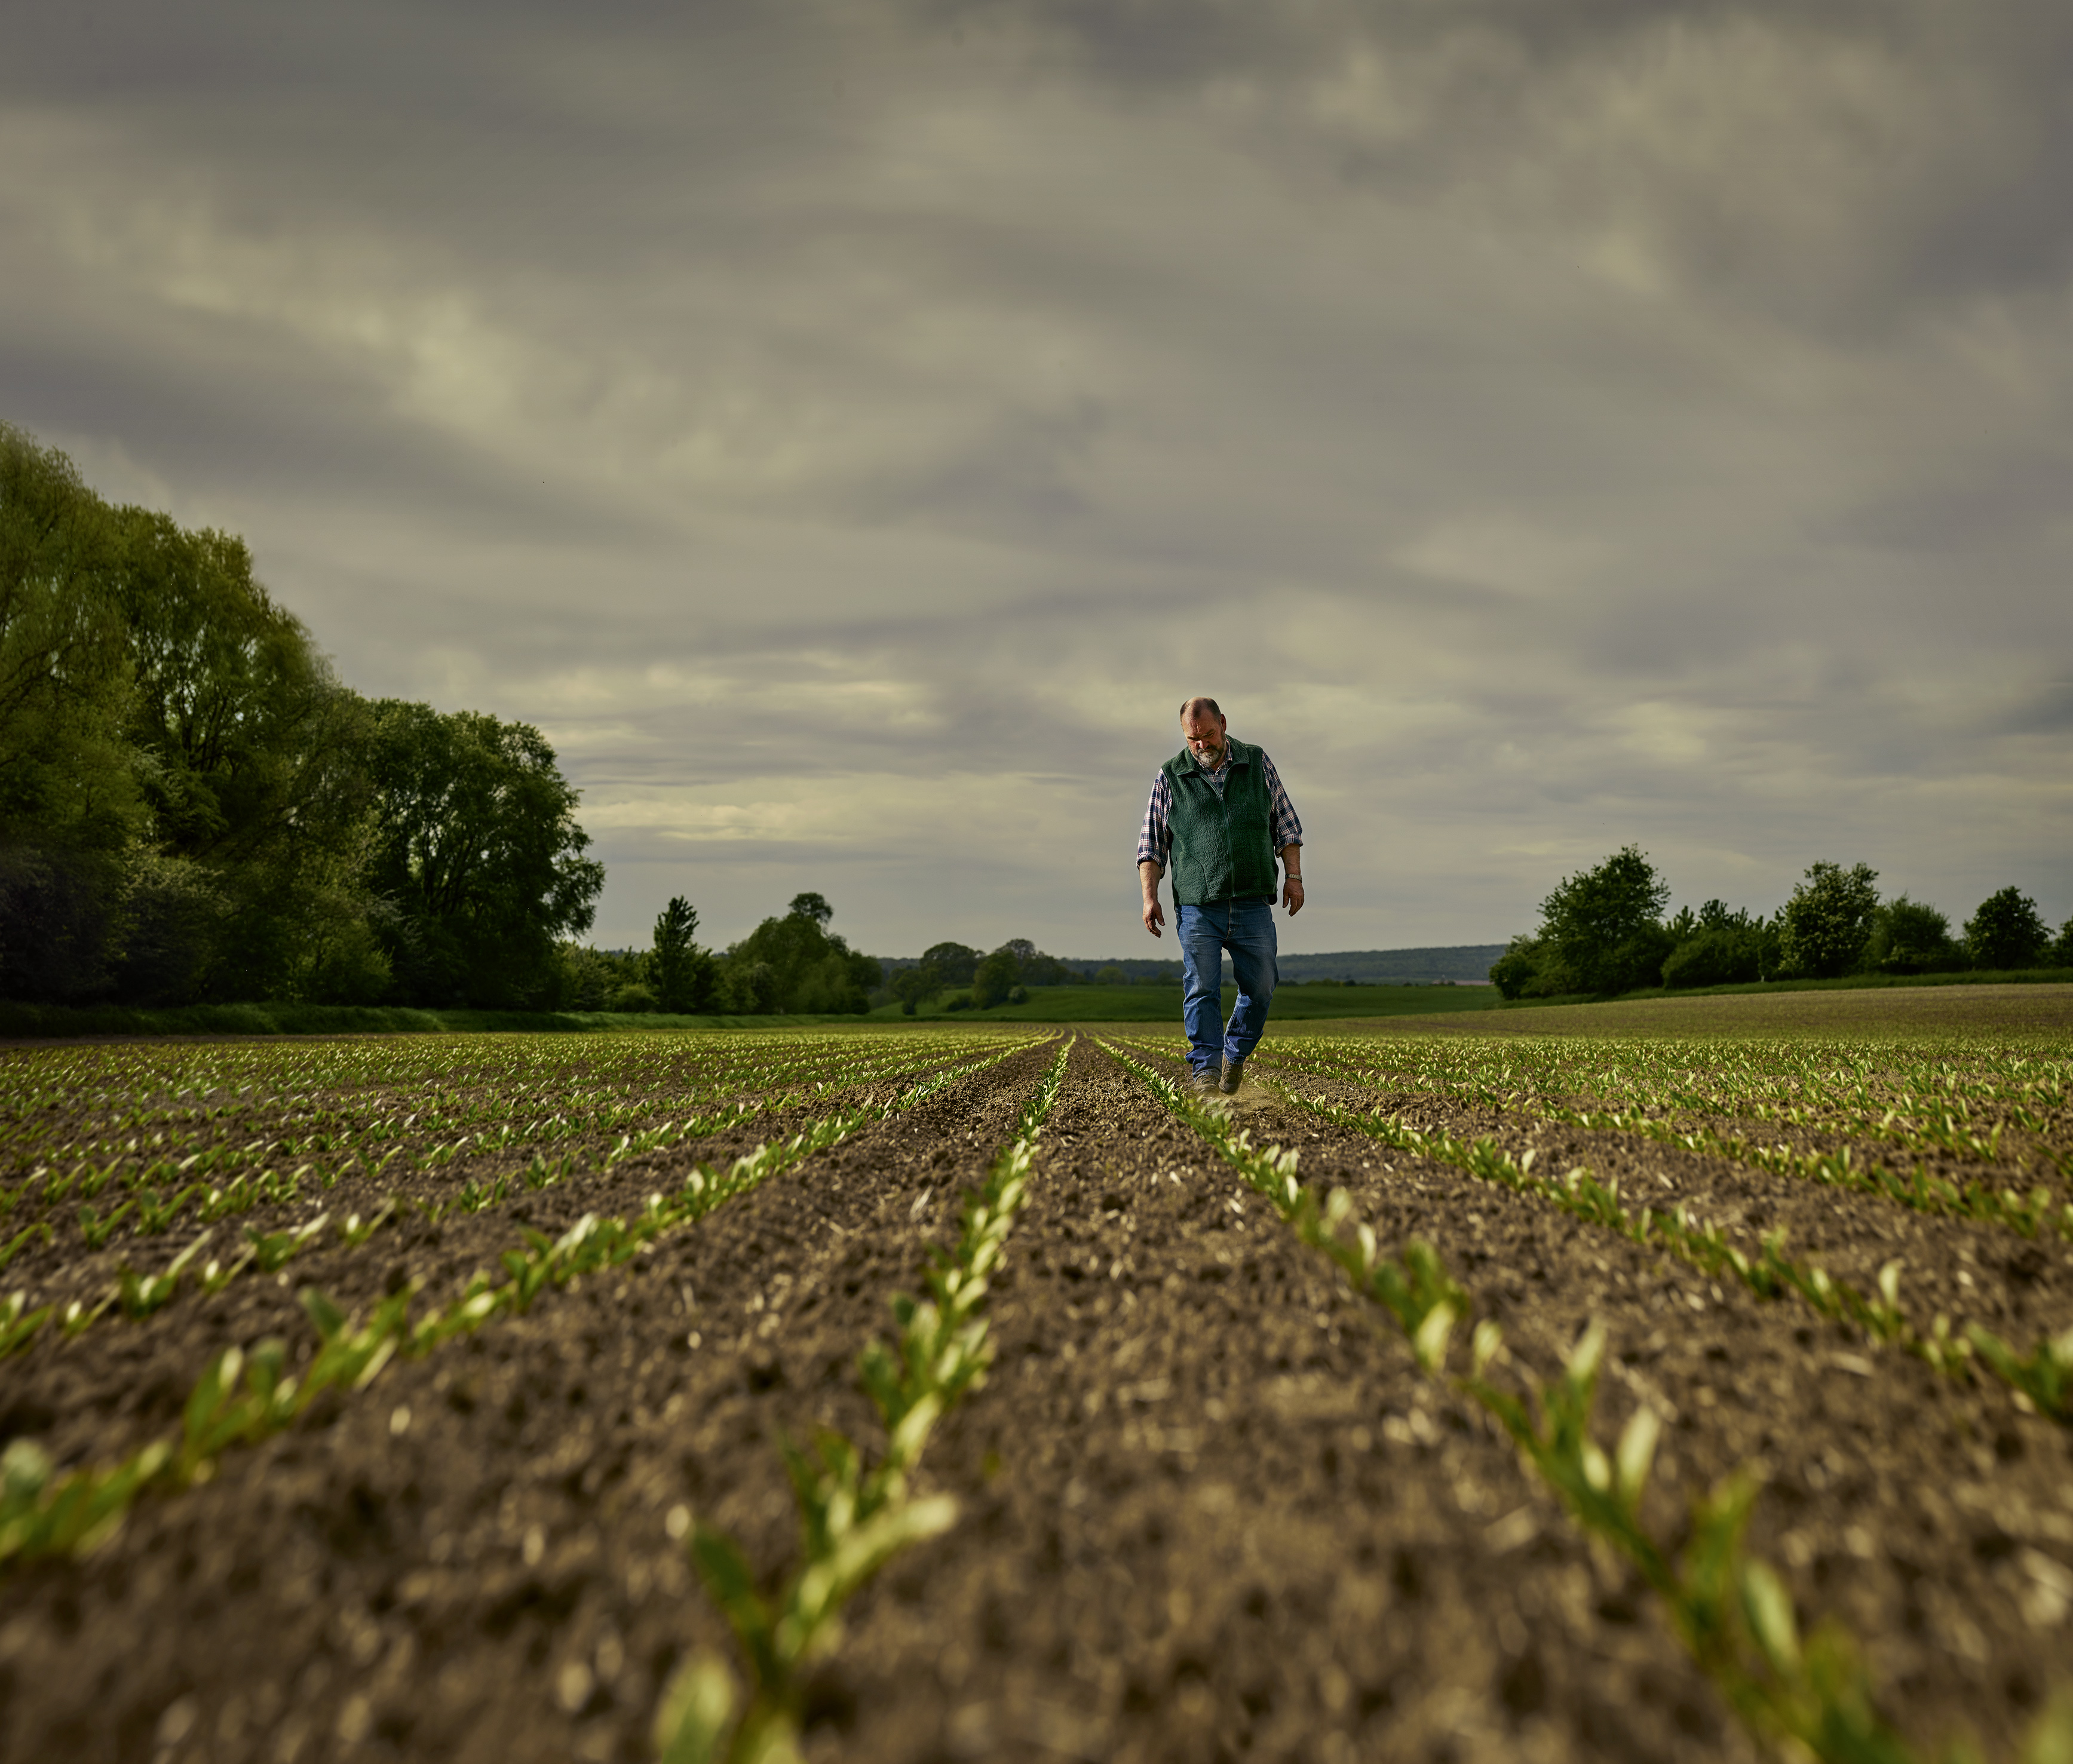 Photo en perspective à faible angle d'un fermier d'âge moyen marchant dans son champ de betteraves à sucre avec des plantes en germination